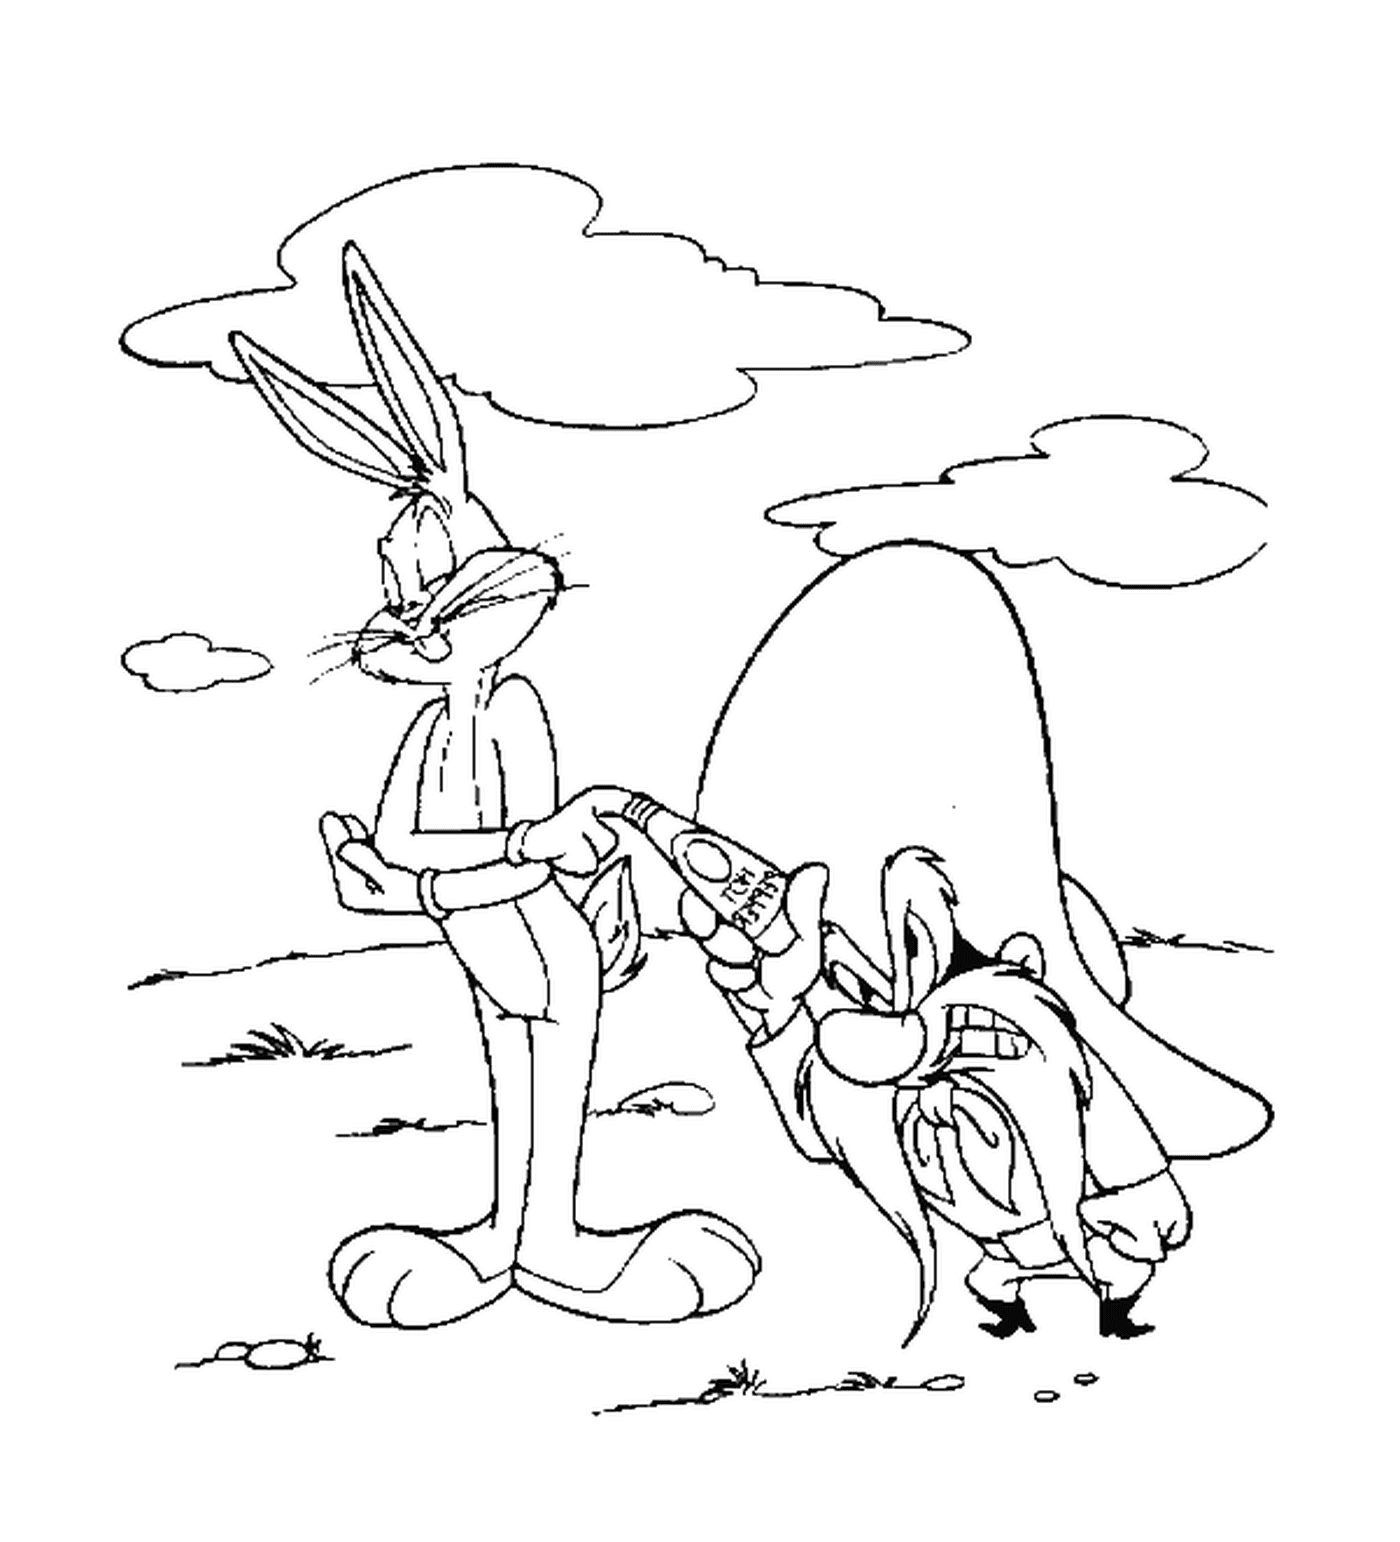  وسام القرّان و بقع الأرنب 